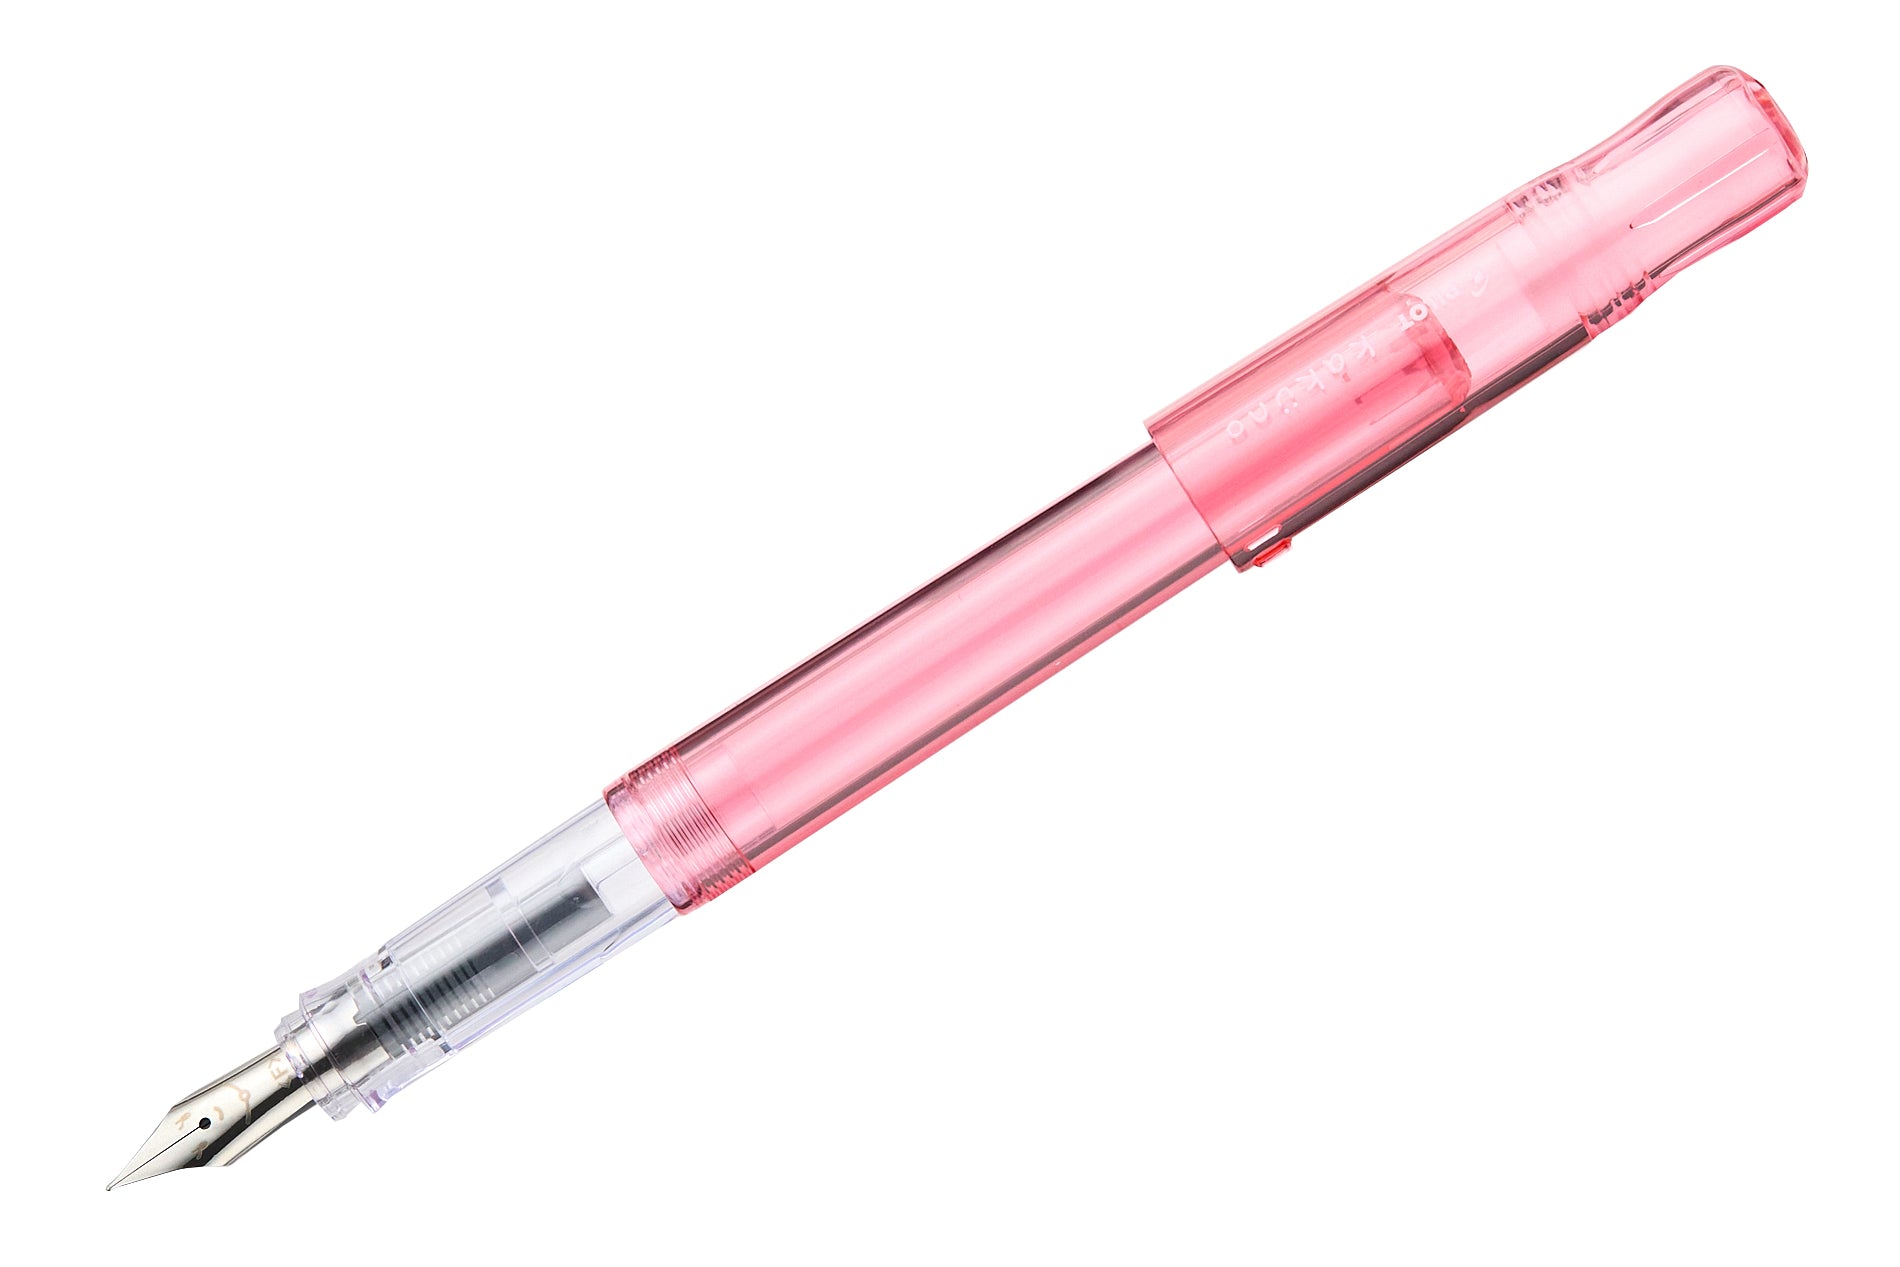 Pilot Kakuno Fountain Pen - Translucent Coral - The Goulet Pen Company